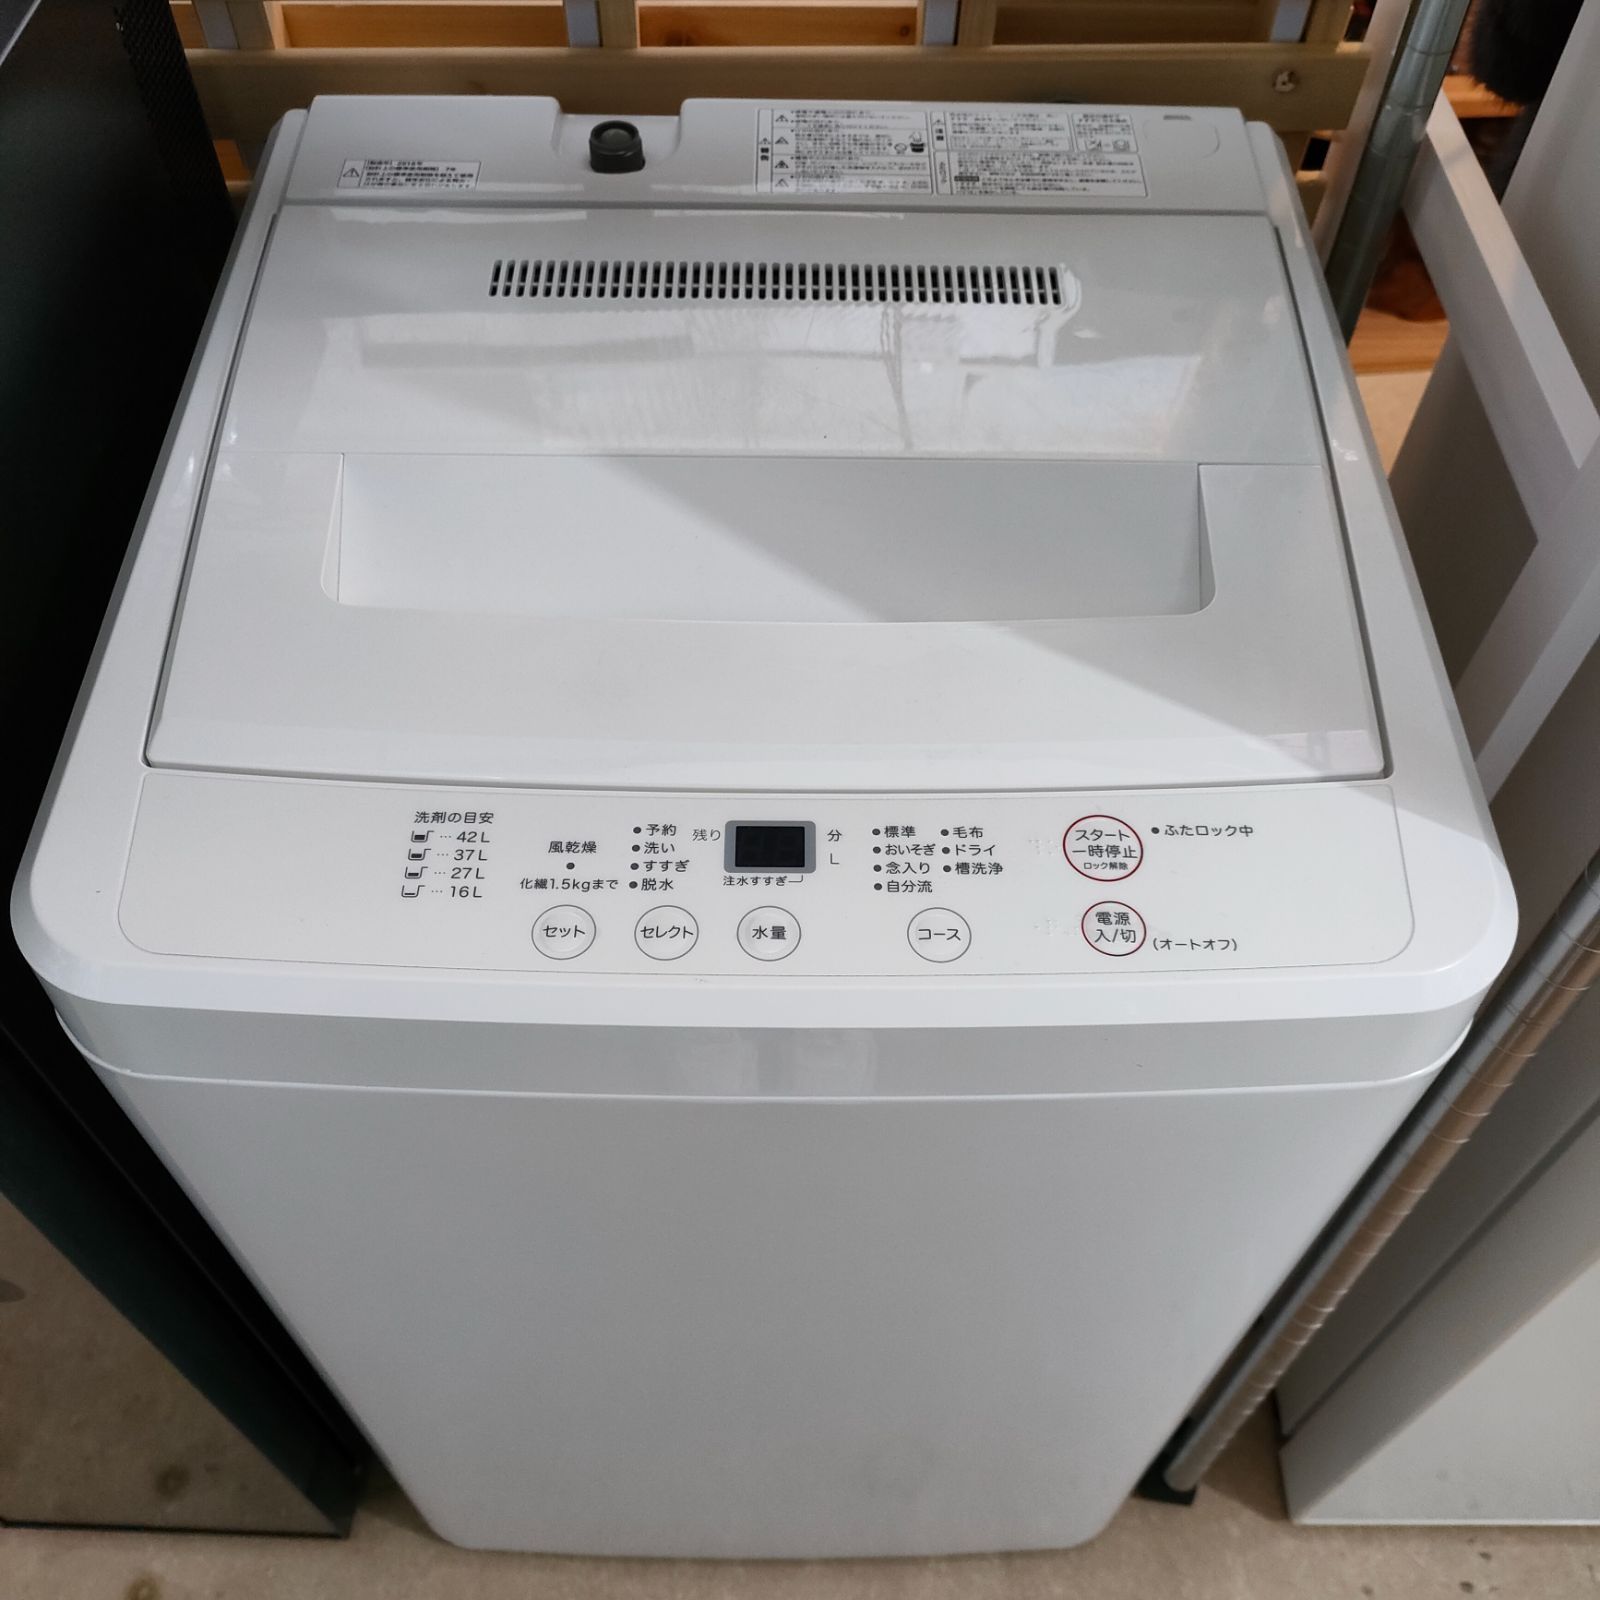 ご注意ください 即購入不可 生活家電 冷蔵庫 洗濯機 アーバンカフェ